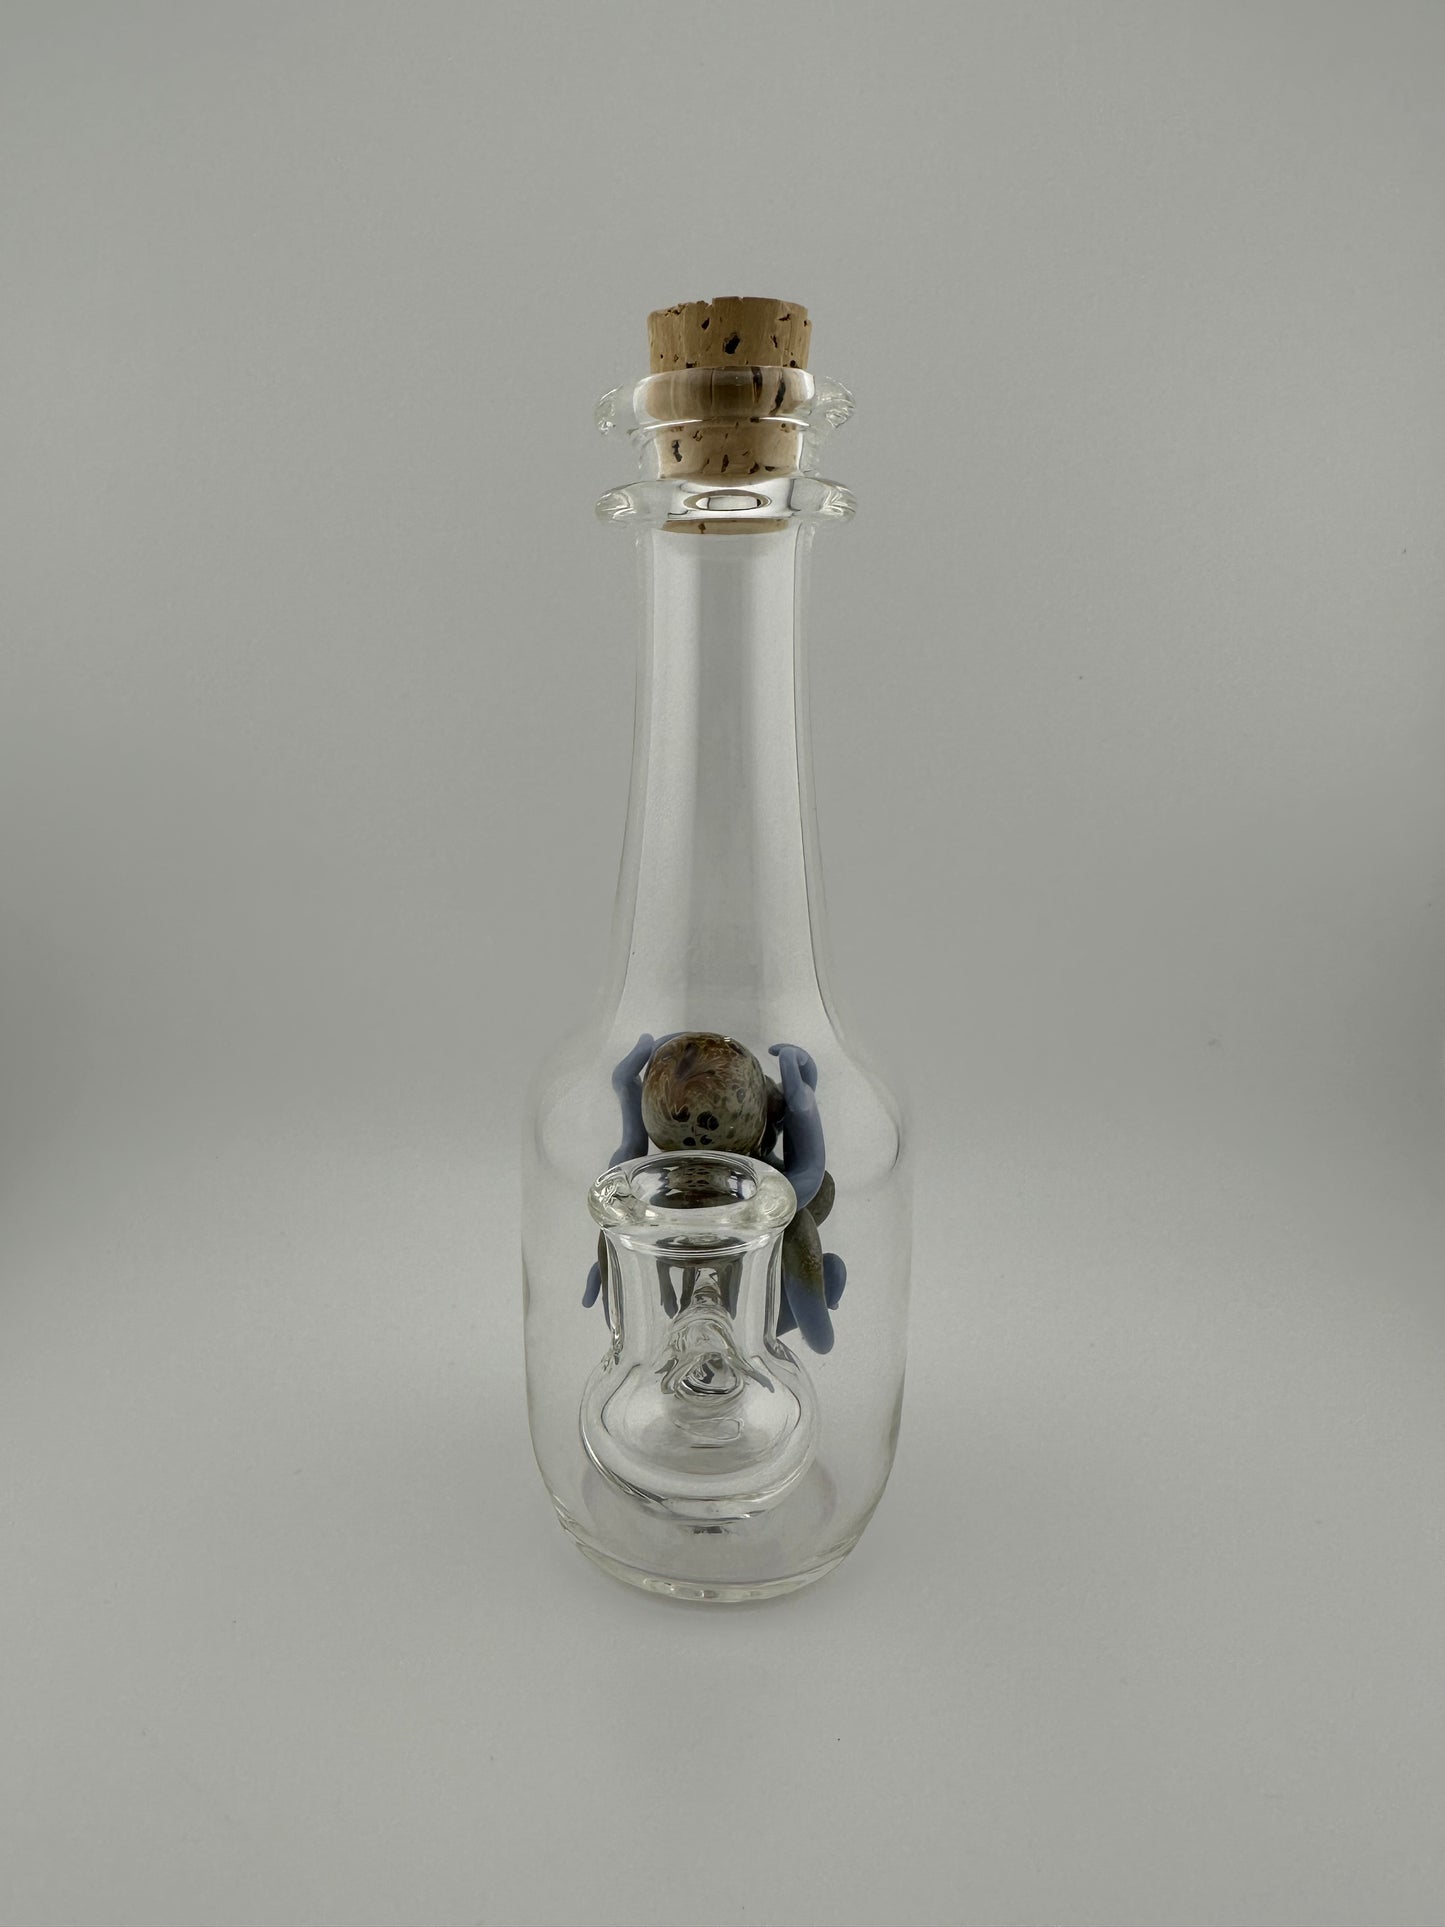 Berning Glass Blue Octopus in a bottle 10mm